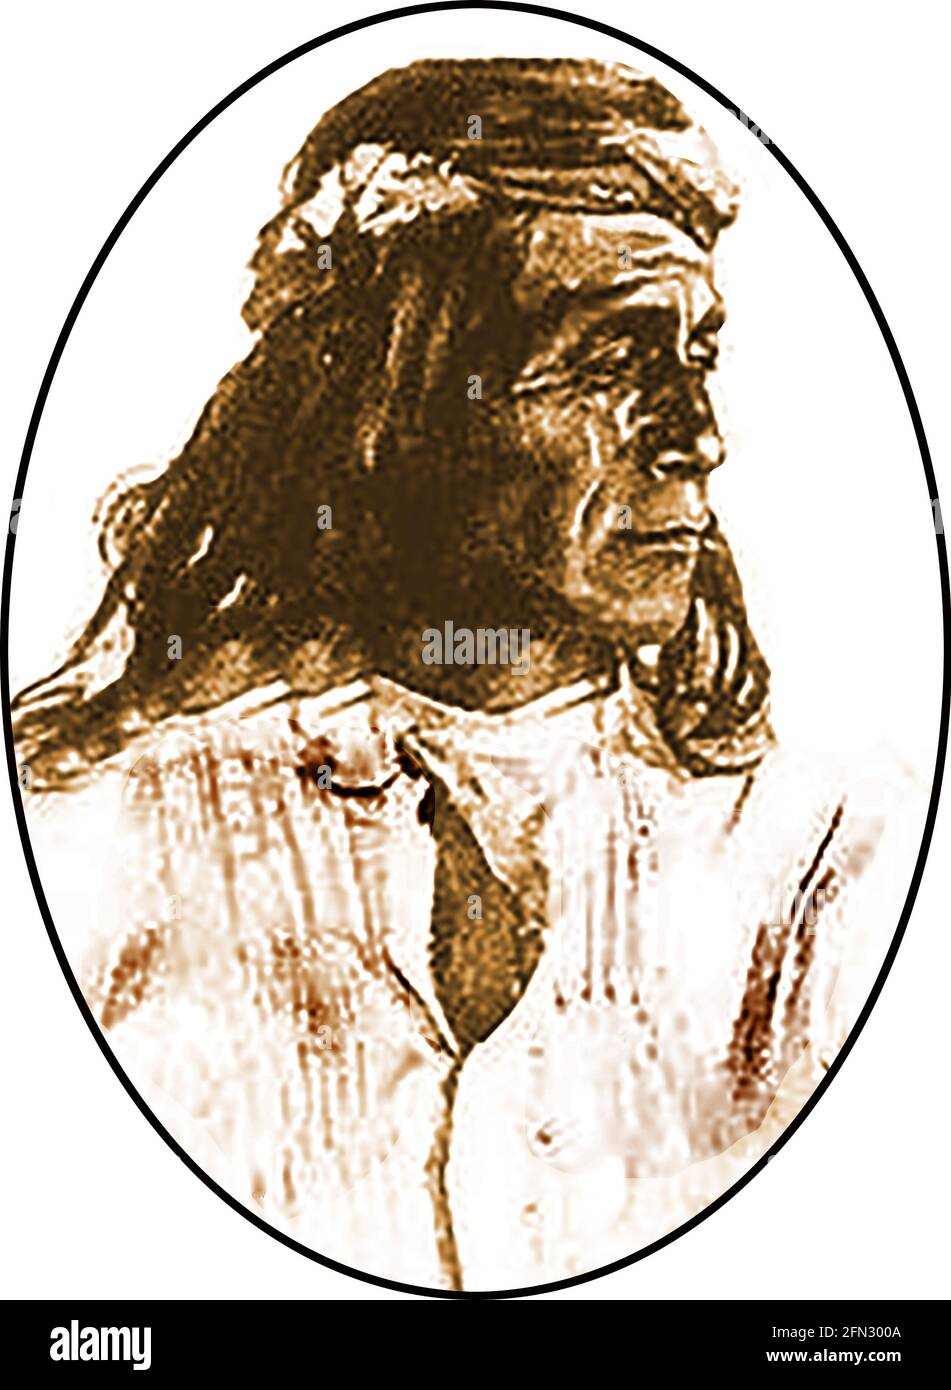 Ein frühes Porträt von Jose Hilario Montoya (1816-1847) , Gouverneur von Cochiti Pueblo und Bürgermeister von Talos, New Mexico. Auch bekannt als Pablo Montoya ist er hier in indianischer Kleidung zu sehen. Er wurde ein bemerkenswerter neumexikanischer Politiker, der sowohl bei der Revolte gegen die mexikanische Regierung von 1837 als auch beim Taos-Aufstand von 1847 gegen die Vereinigten Staaten (mexikanisch-amerikanischer Krieg) aktiv war. Er war der Sohn von Andres Montoya & Victoria Velarde und heiratete Maria Teresa Esquivel. Wegen seiner Beteiligung an der Revolte von 1847 wurden er und 14 andere zum Tode verurteilt und auf dem zentralen platz von Taos öffentlich aufgehängt. Stockfoto